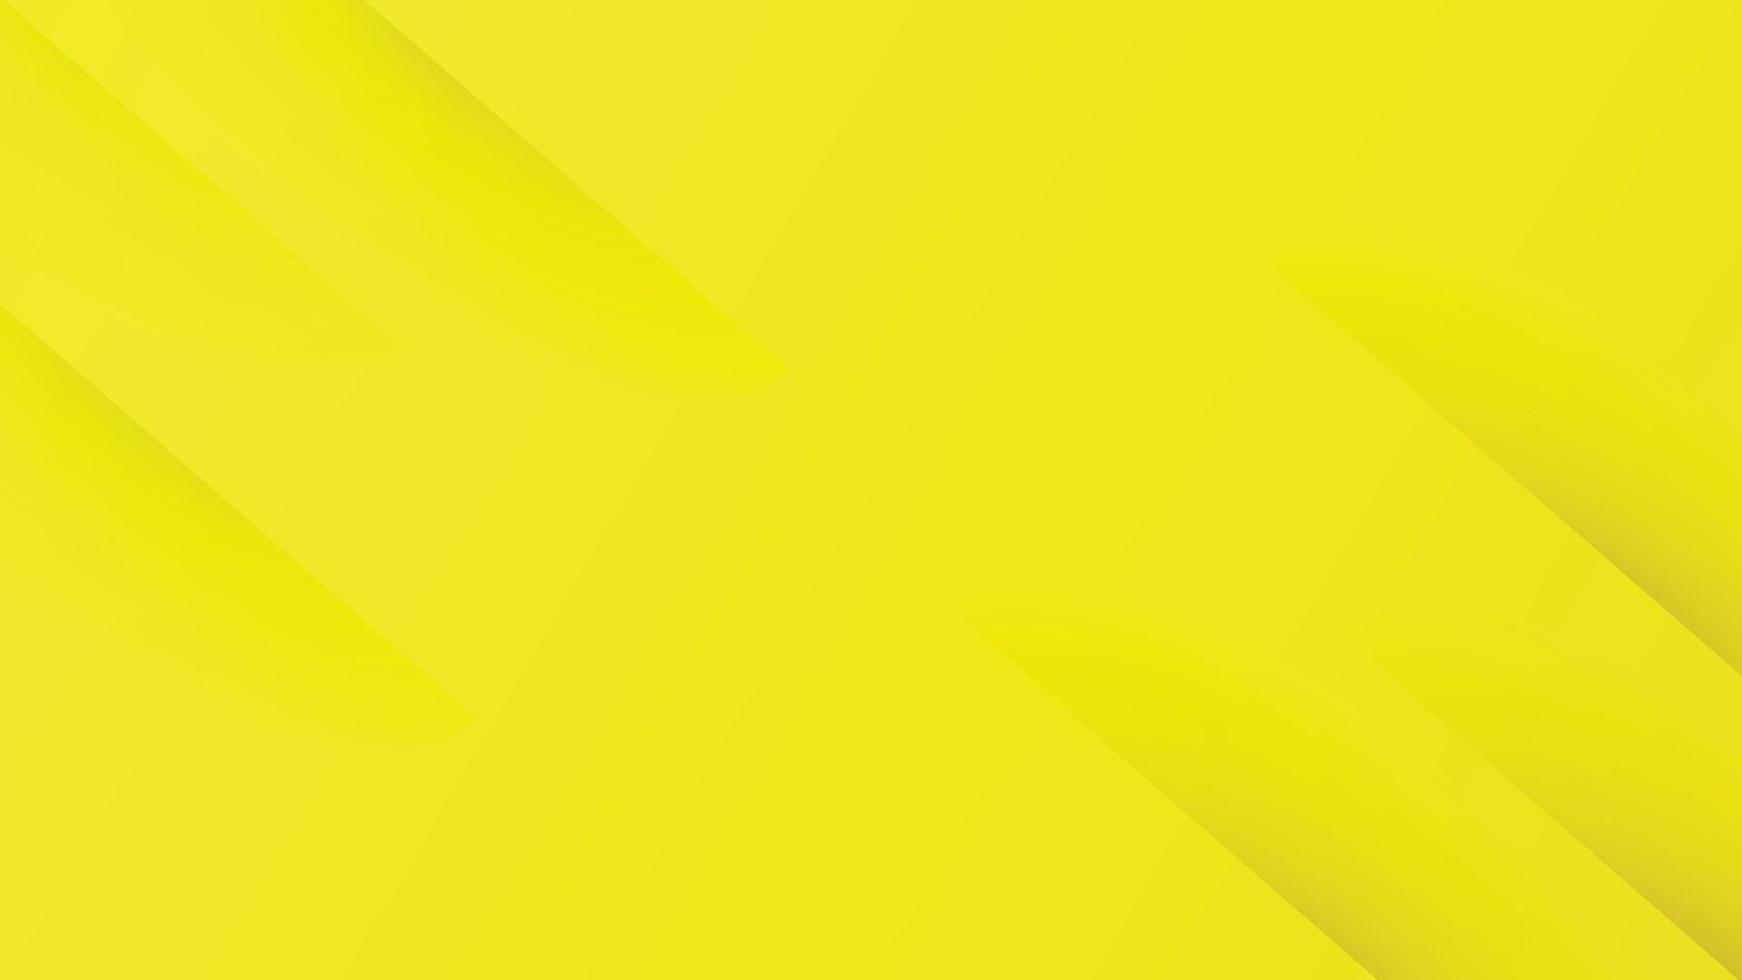 sfondo giallo sfumato astratto con strisce diagonali. può essere utilizzato per il modello di brochure di copertina, poster, banner web, pubblicità stampata, ecc. Illustrazione vettoriale